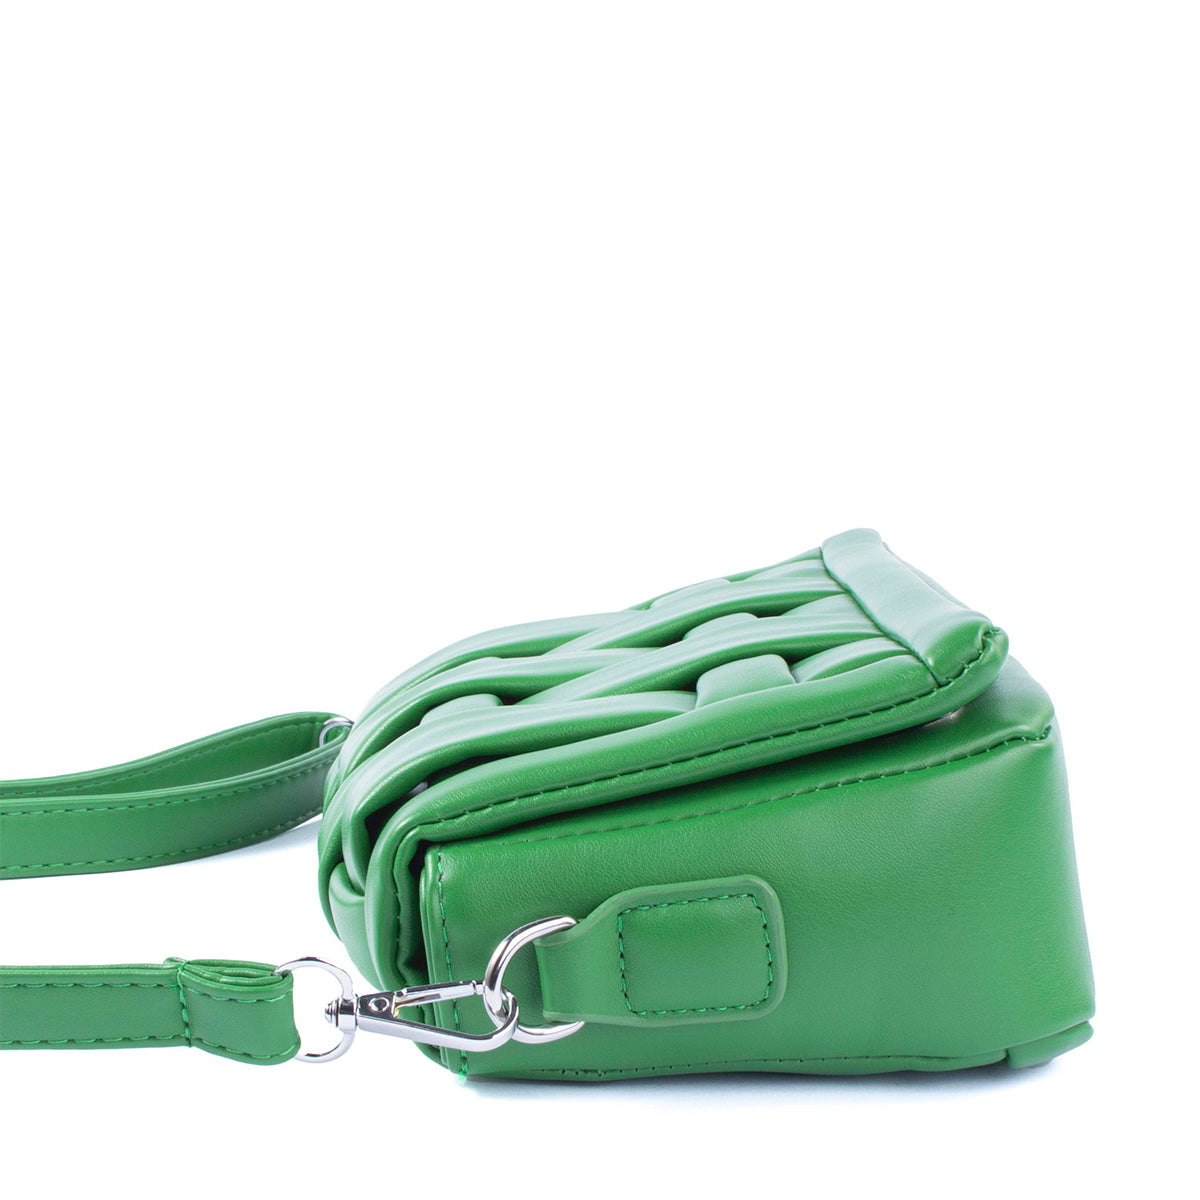 Bolso tipo bandolera color verde diseño acolchado y moderno